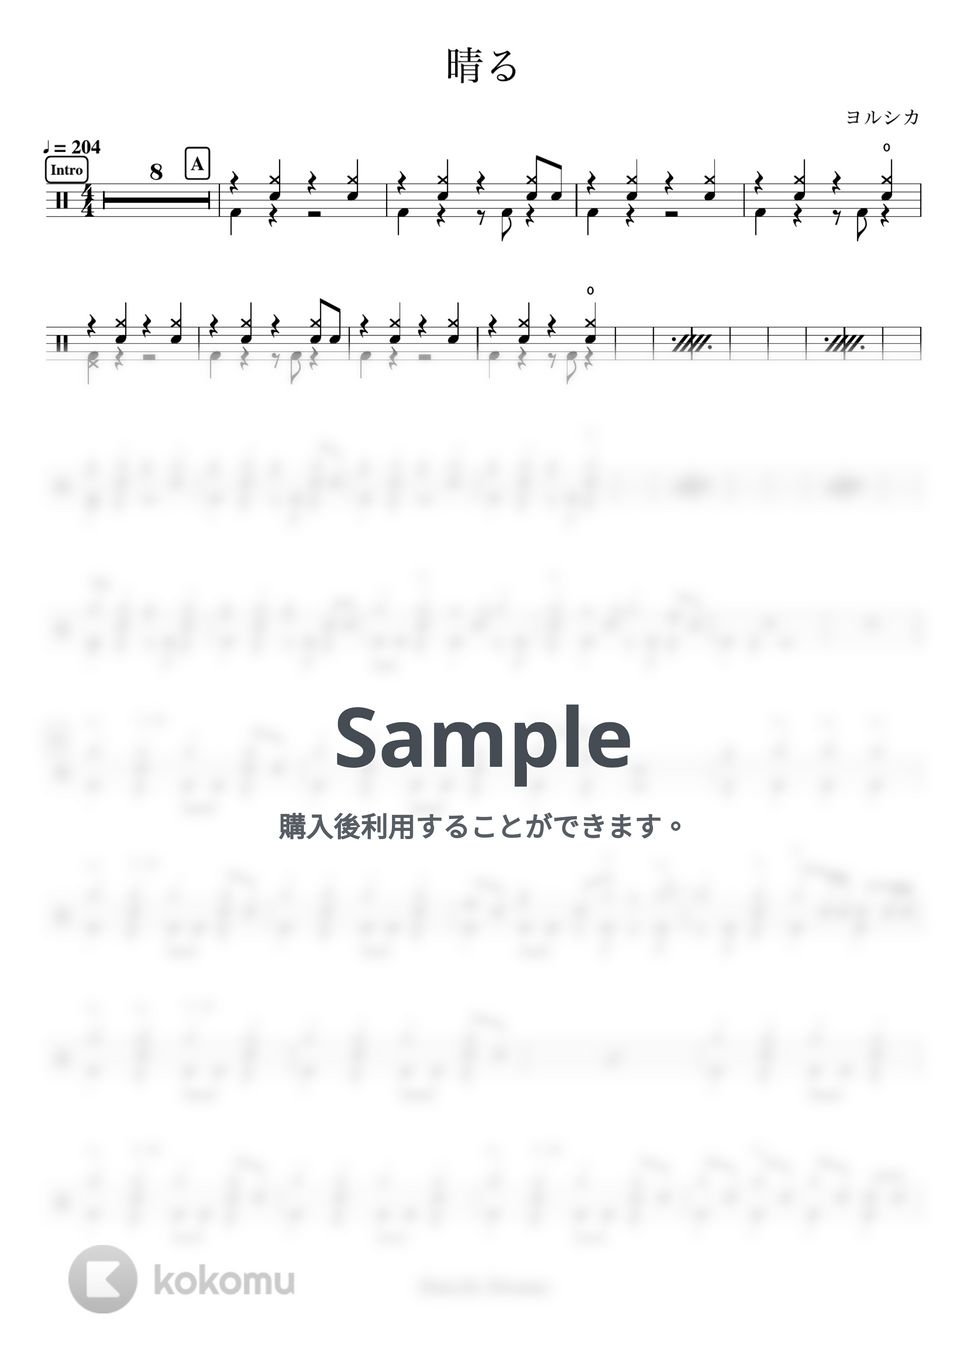 ヨルシカ - 晴る by Daichi Drums